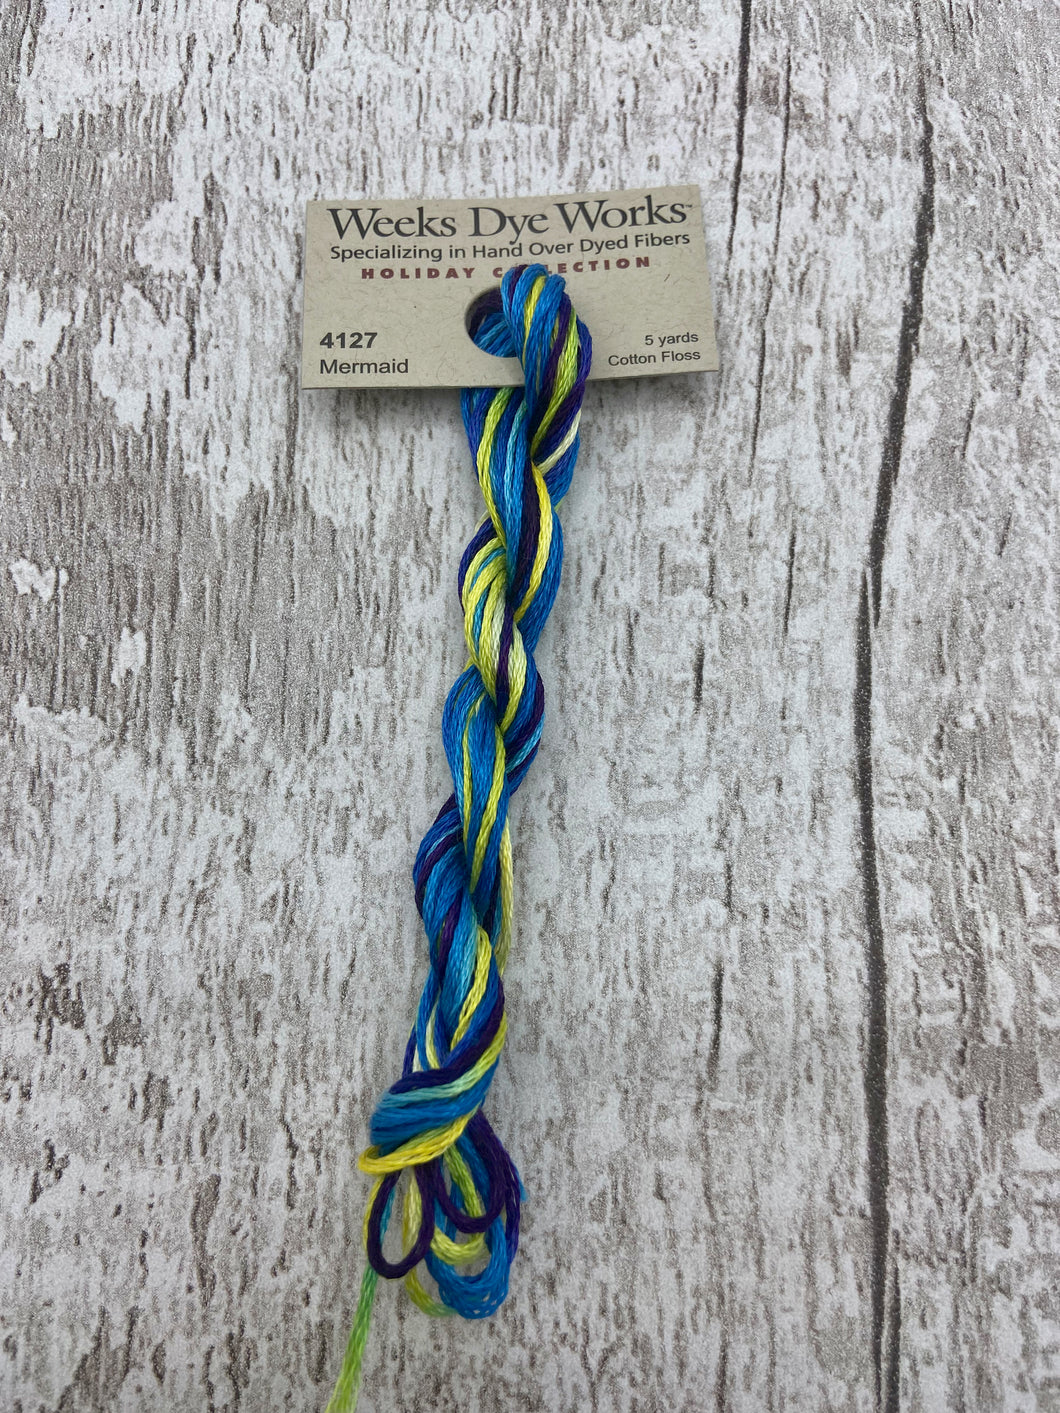 Mermaid (#4127) Weeks Dye Works 6-strand cotton floss